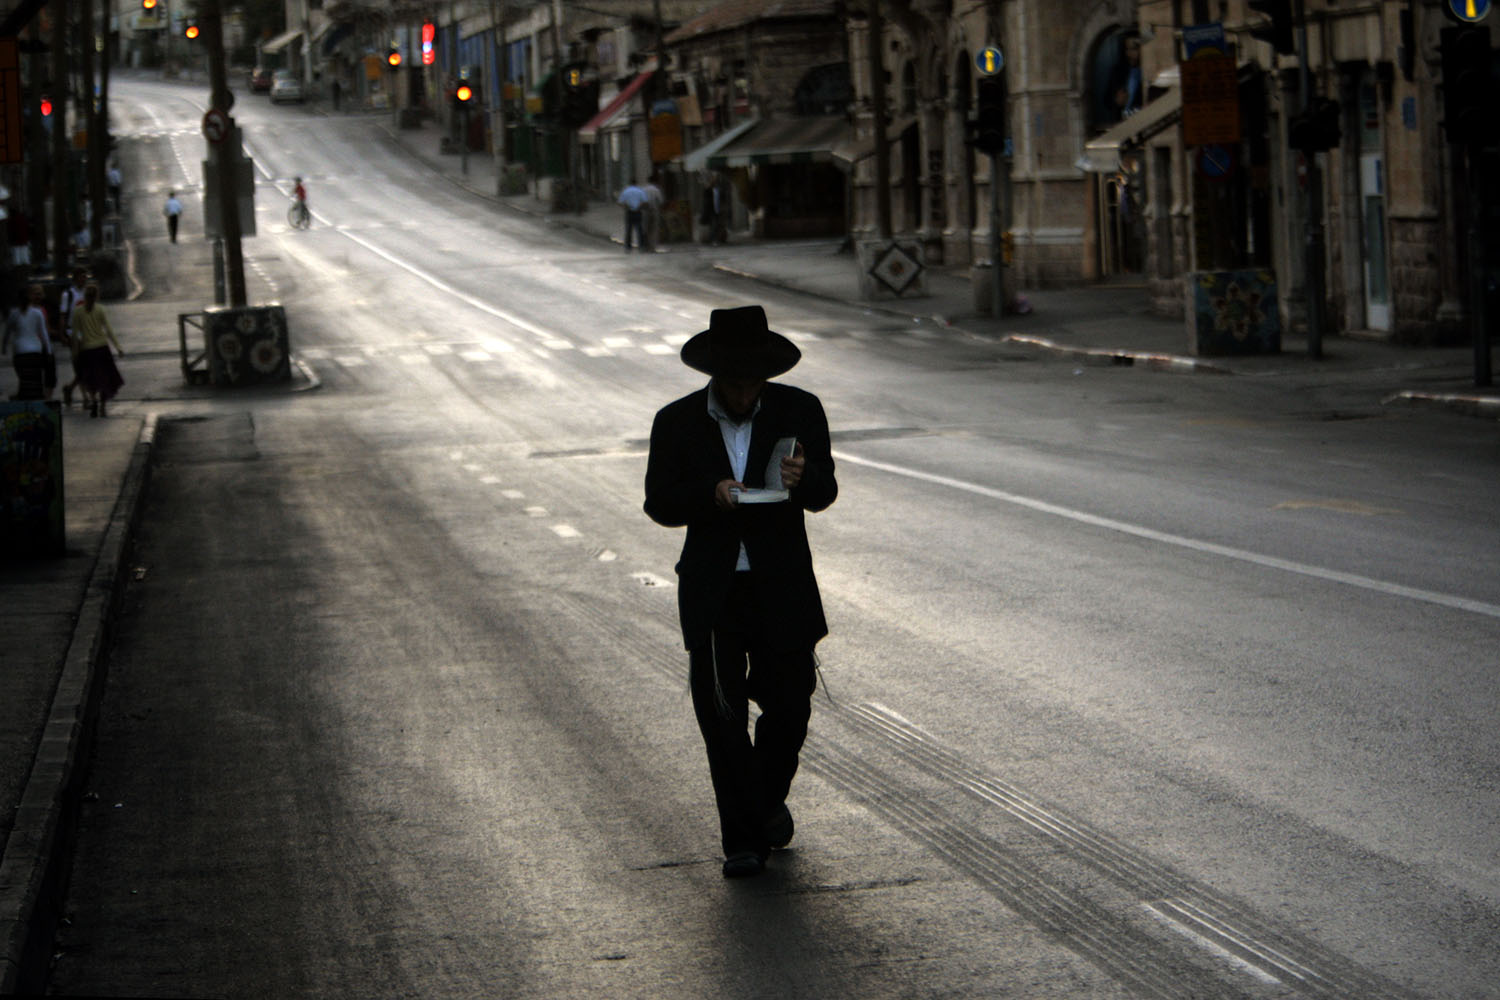 Especial Israel. Un judío ortodoxo reza mientras va caminando por una calle vacía de Jerusalén